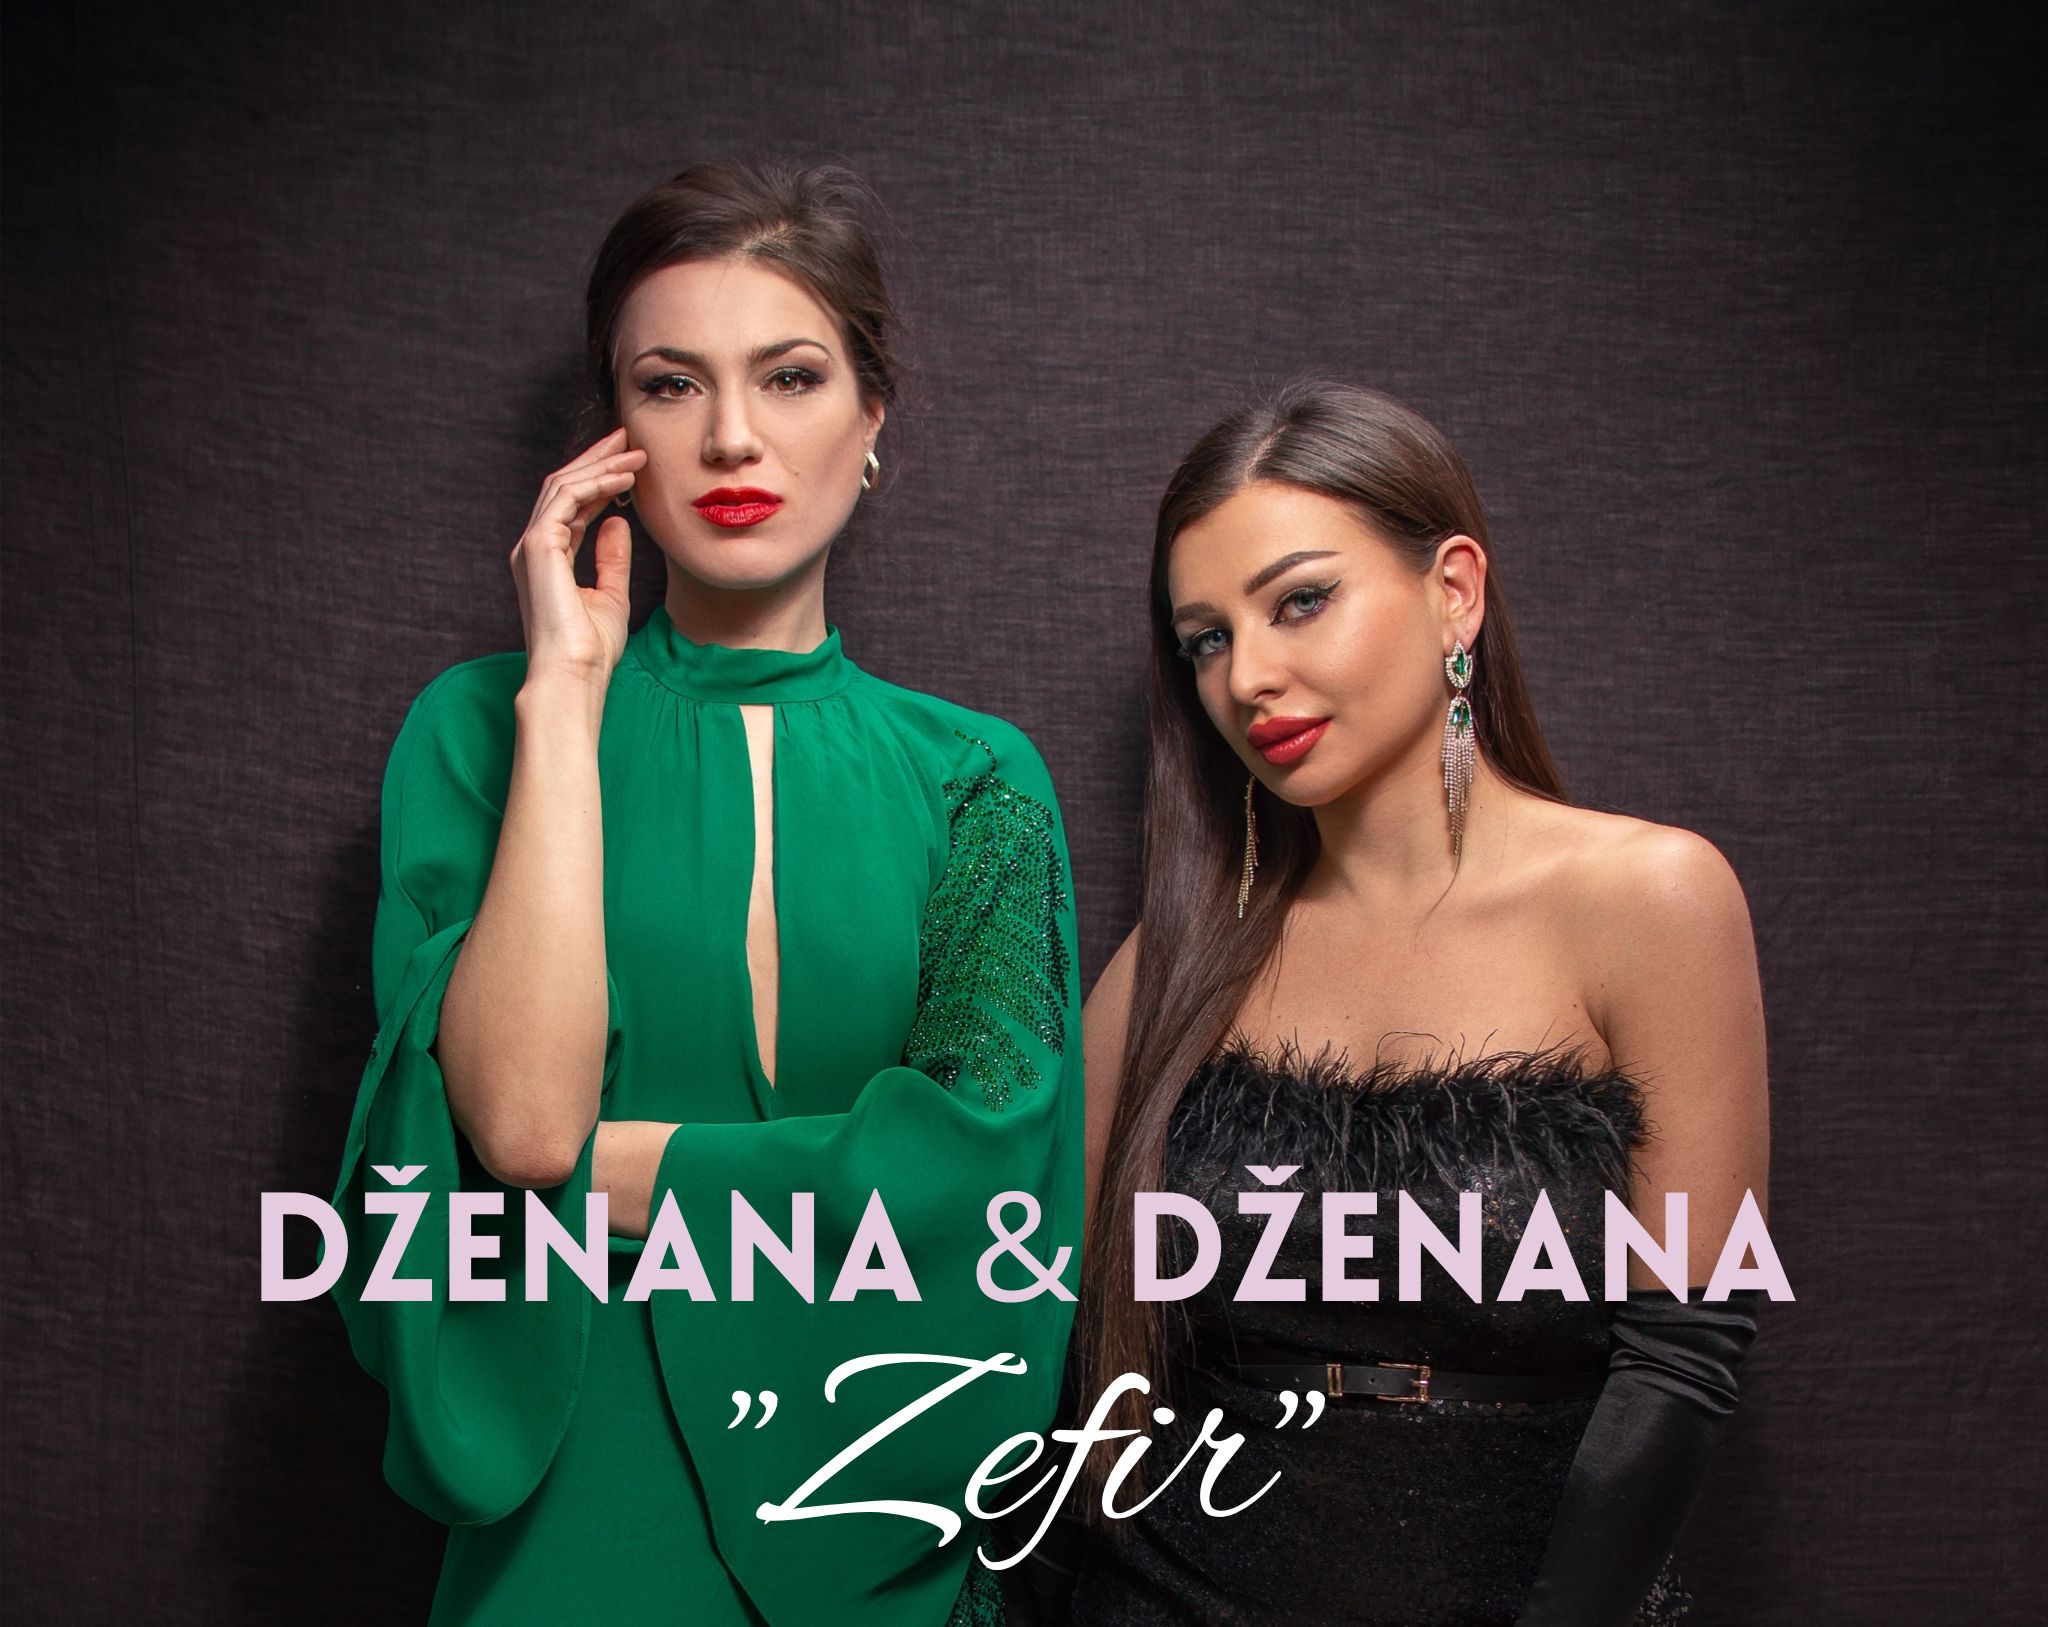 “Zefir” novi album Dženana & Dženana